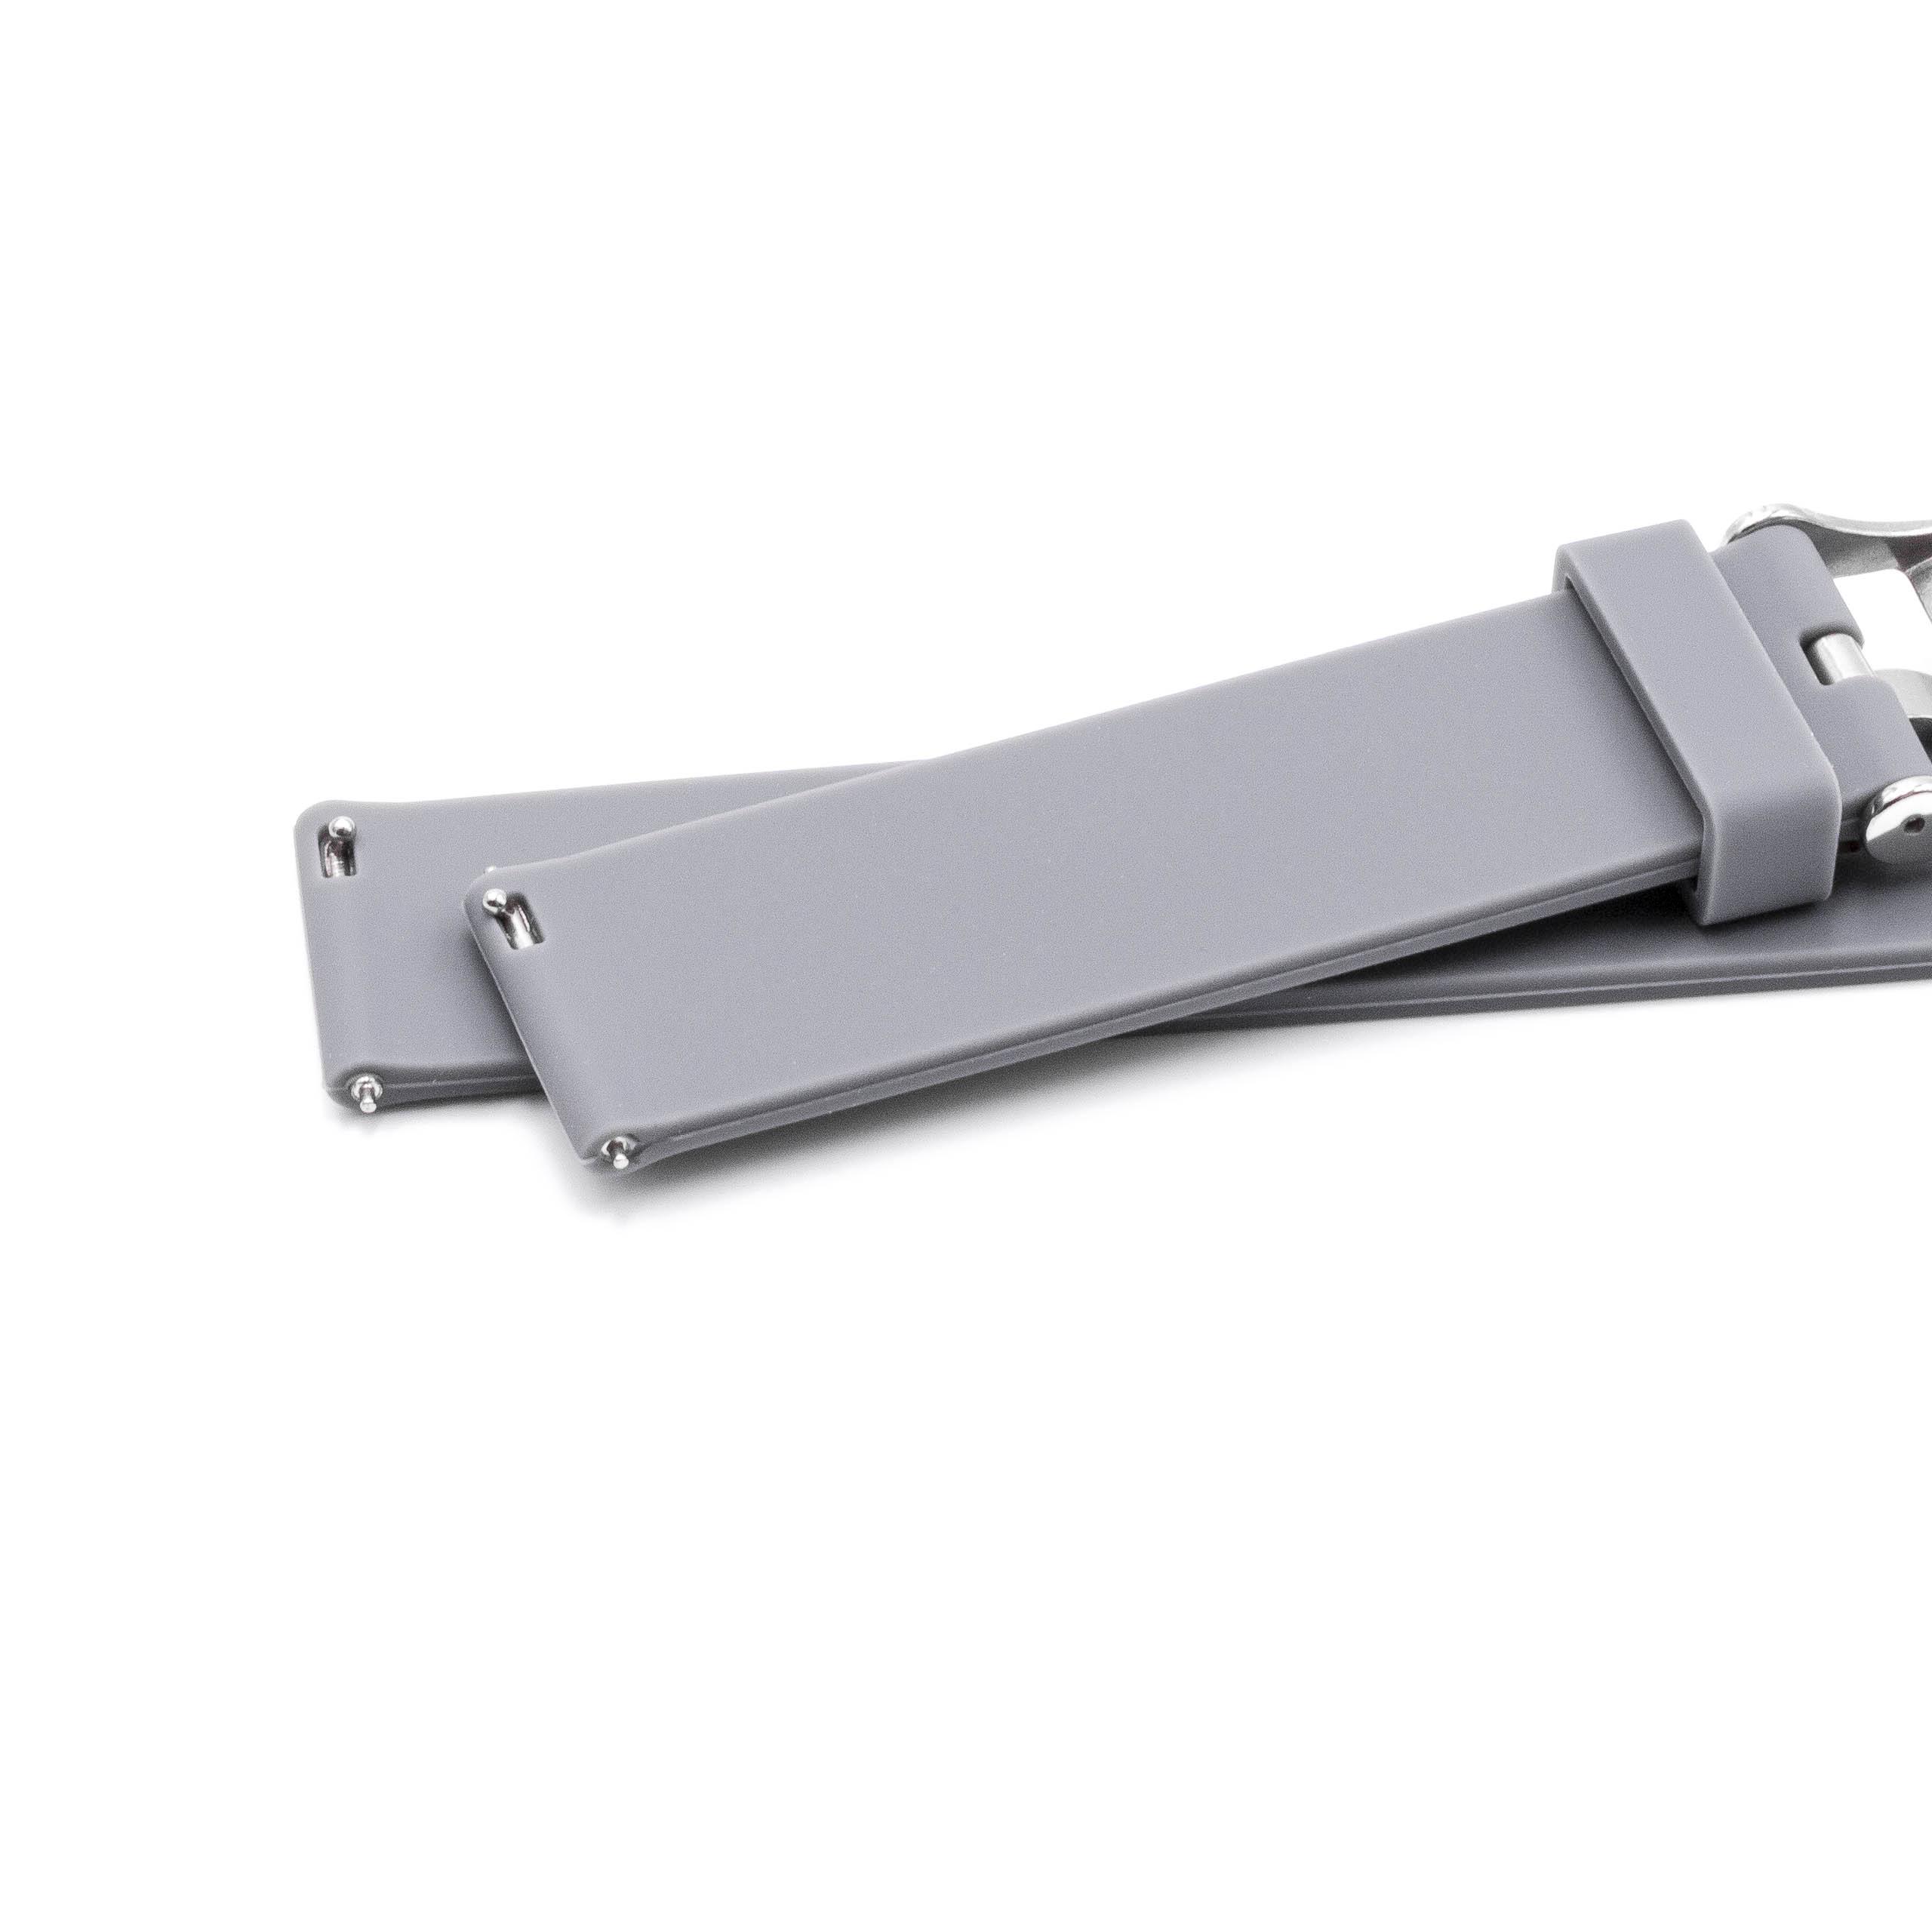 cinturino L per Huawei Watch Smartwatch ecc - 12,2cm + 8,5 cm lunghezza, 22mm ampiezza, silicone, grigio